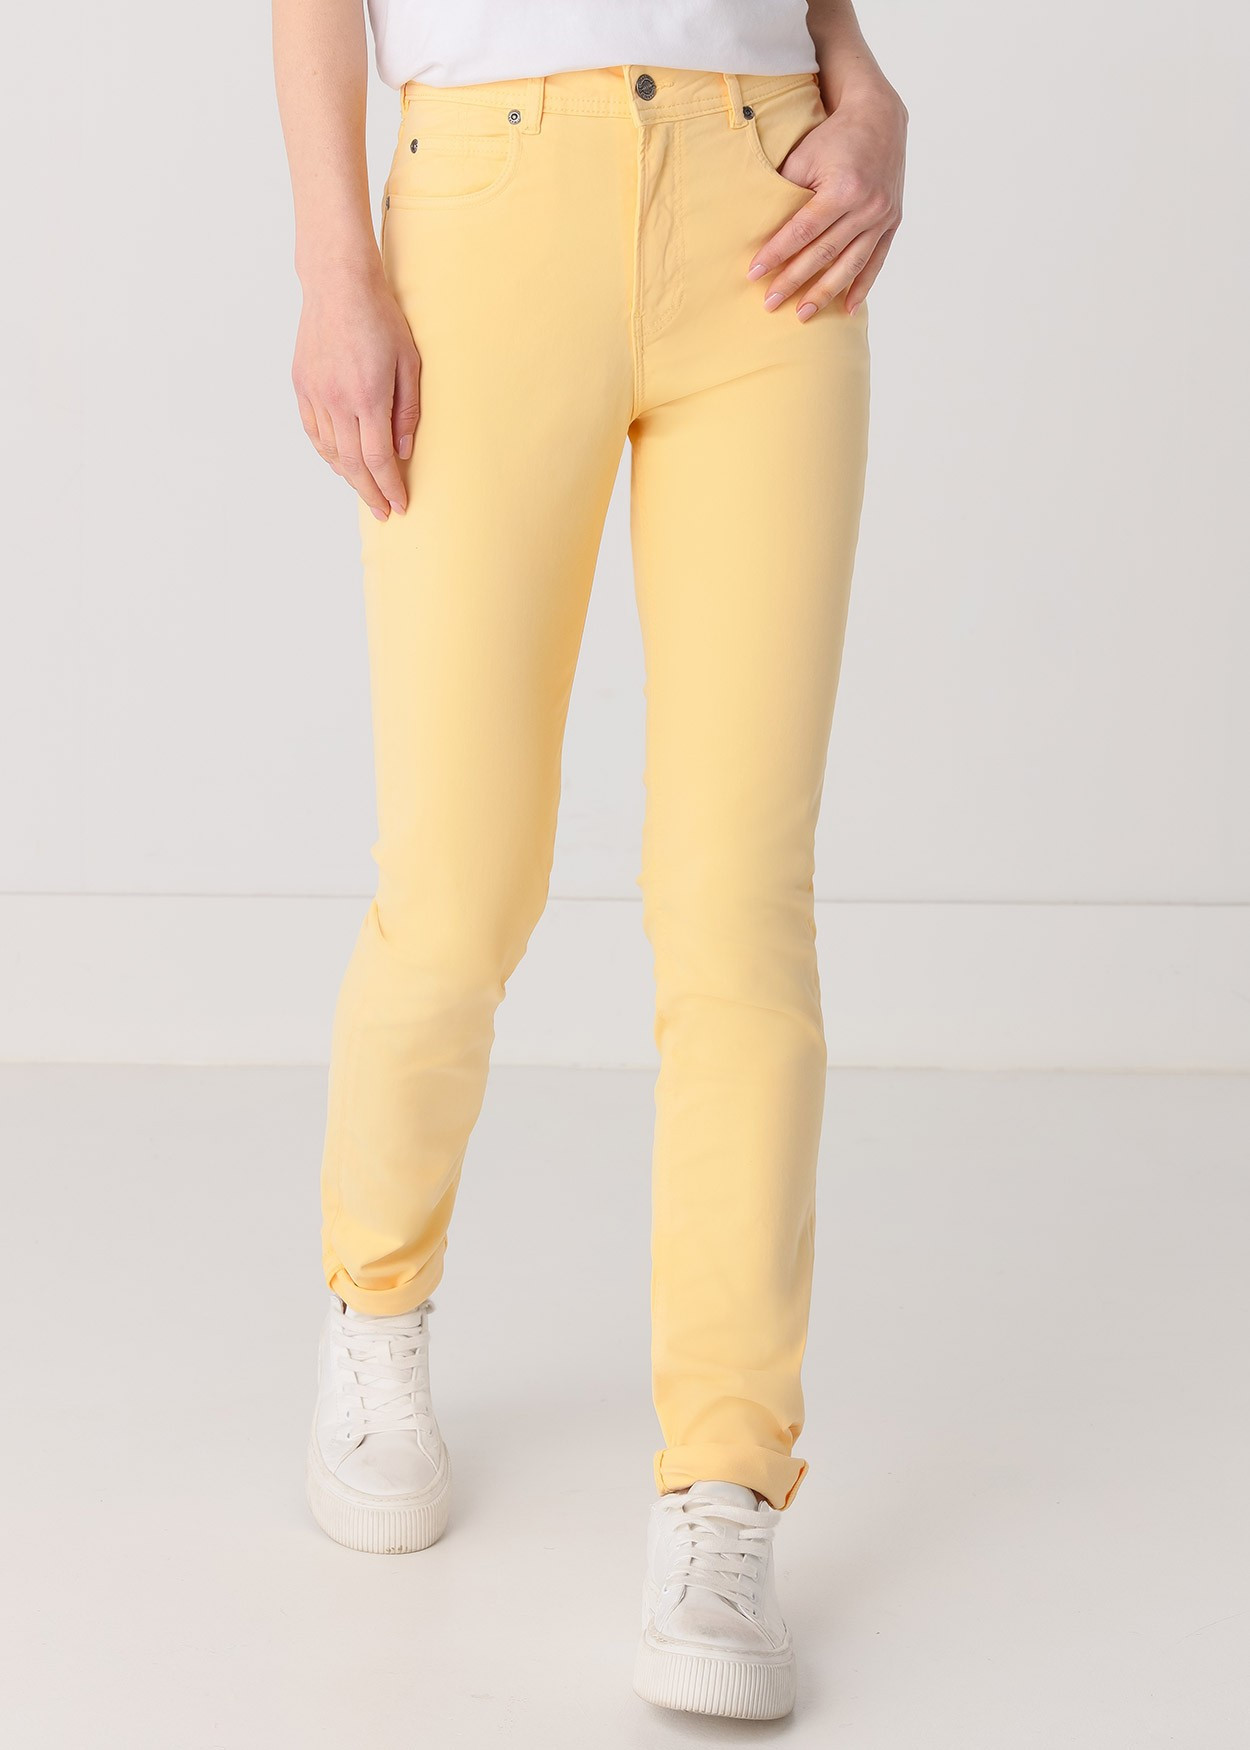 Pantalon Couleur Nouflore-Quin | Taille naturelle - Slim | Taille en pouces Cimarron